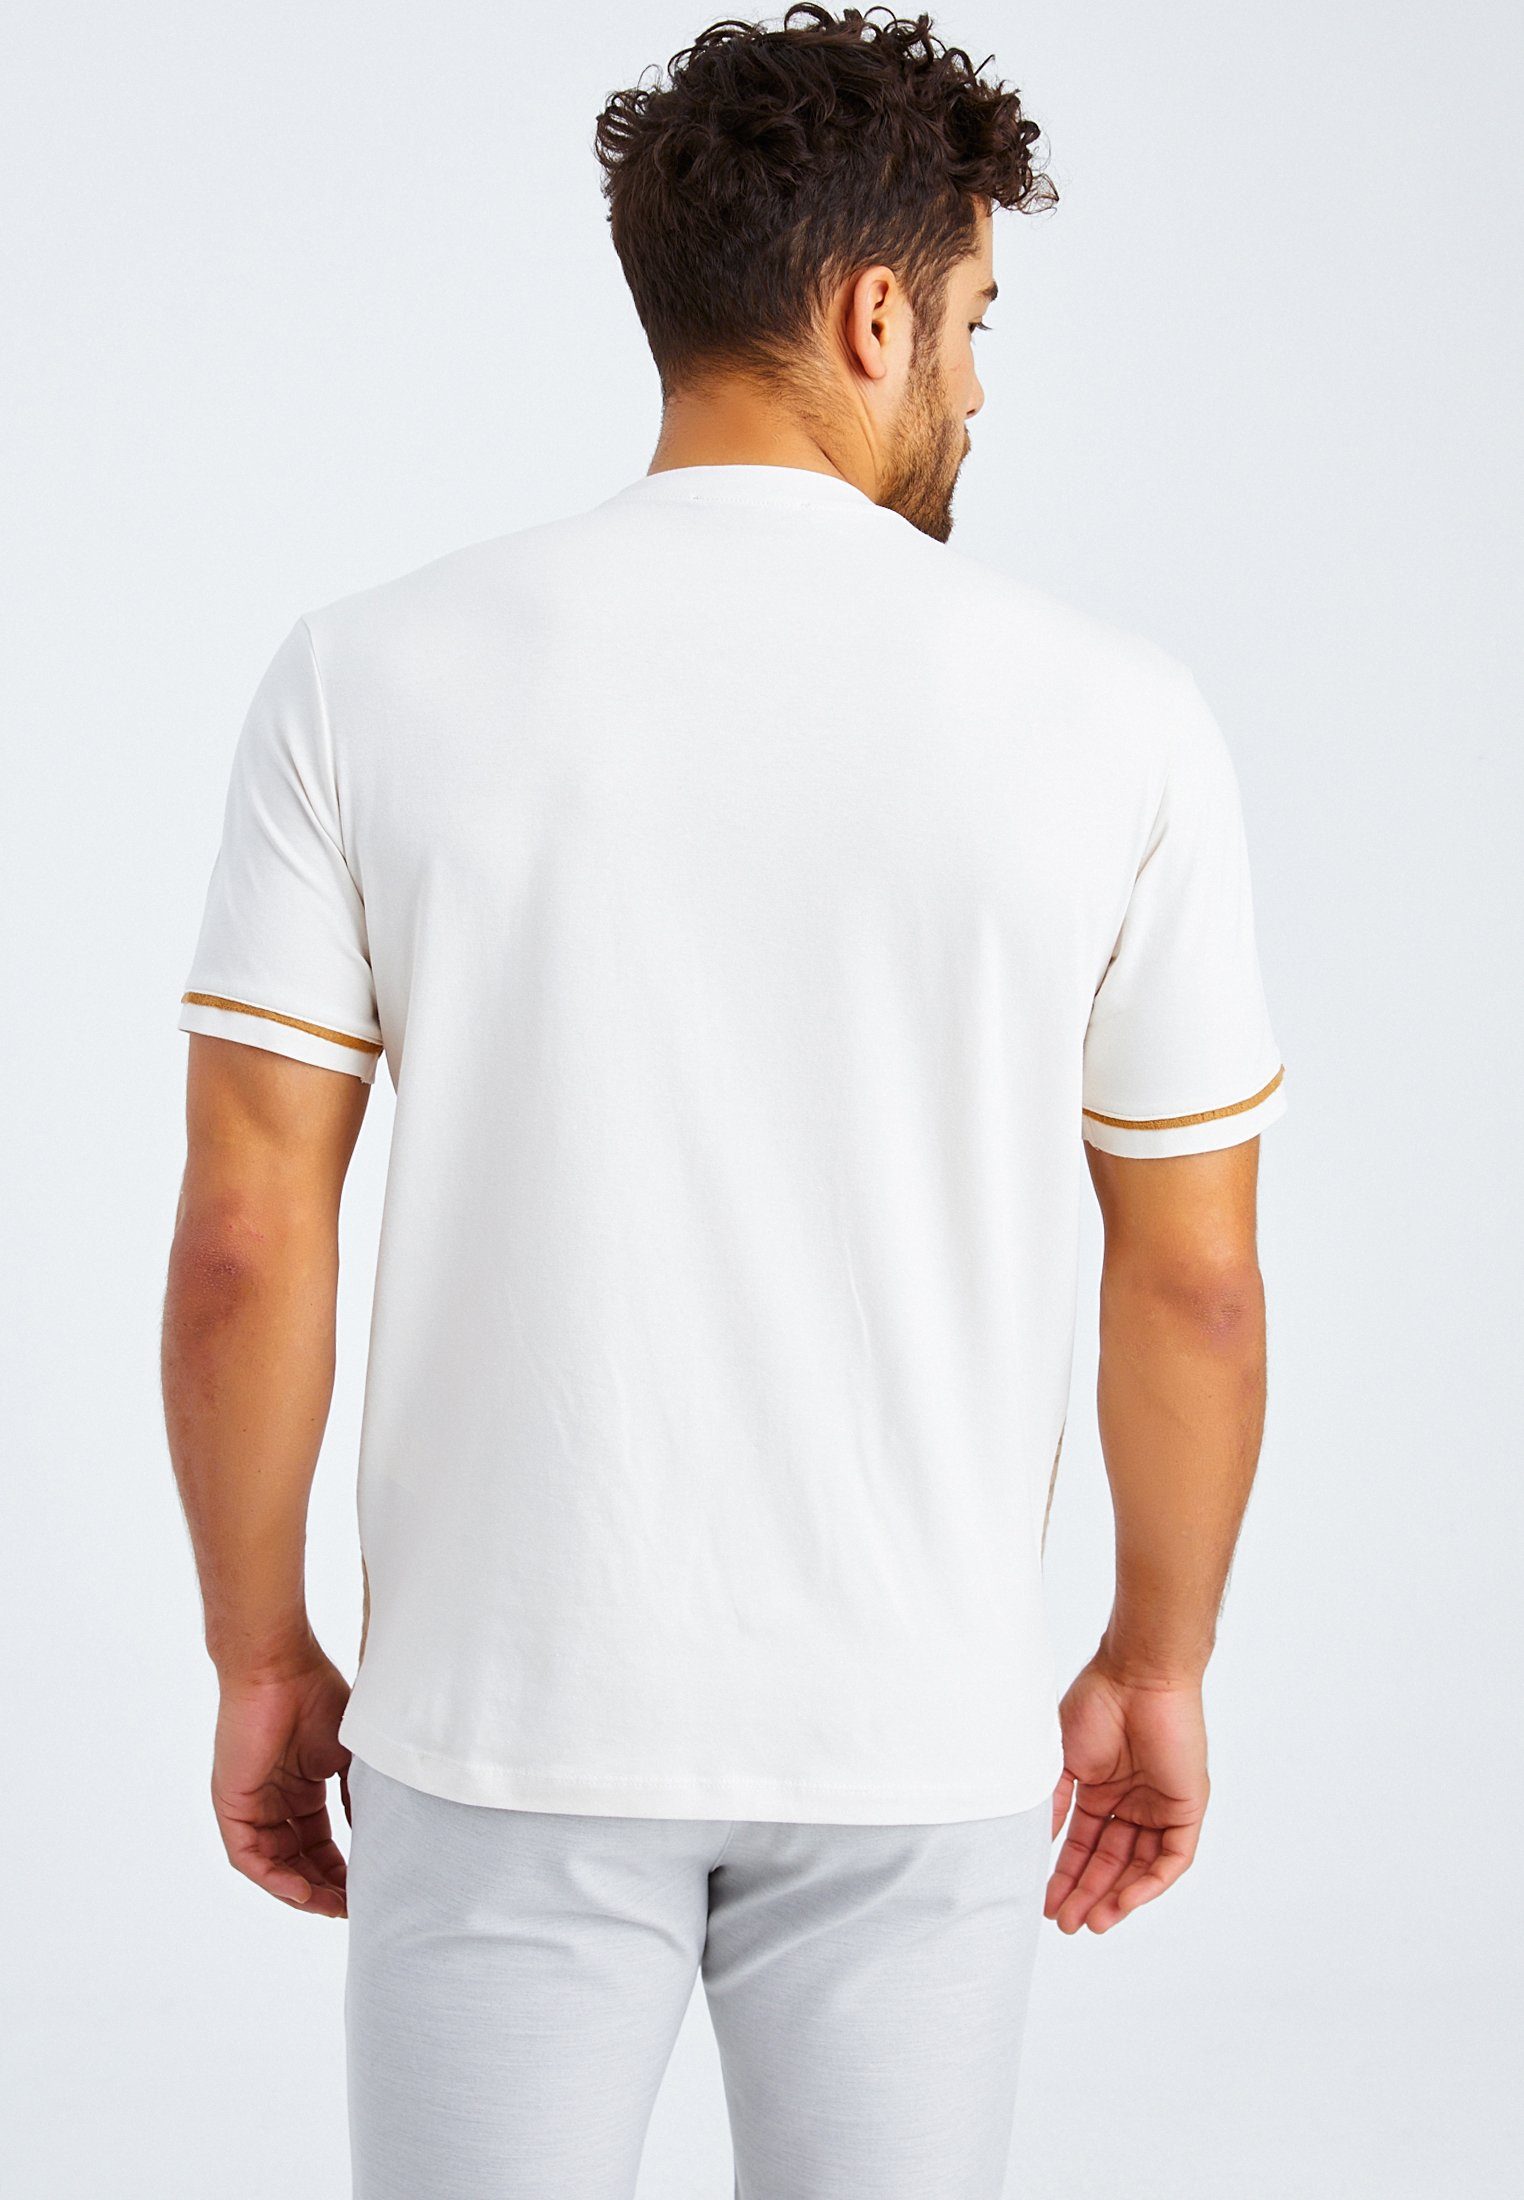 Leif normal V-Ausschnitt Nelson T-Shirt Herren steinfarben T-Shirt LN-55740